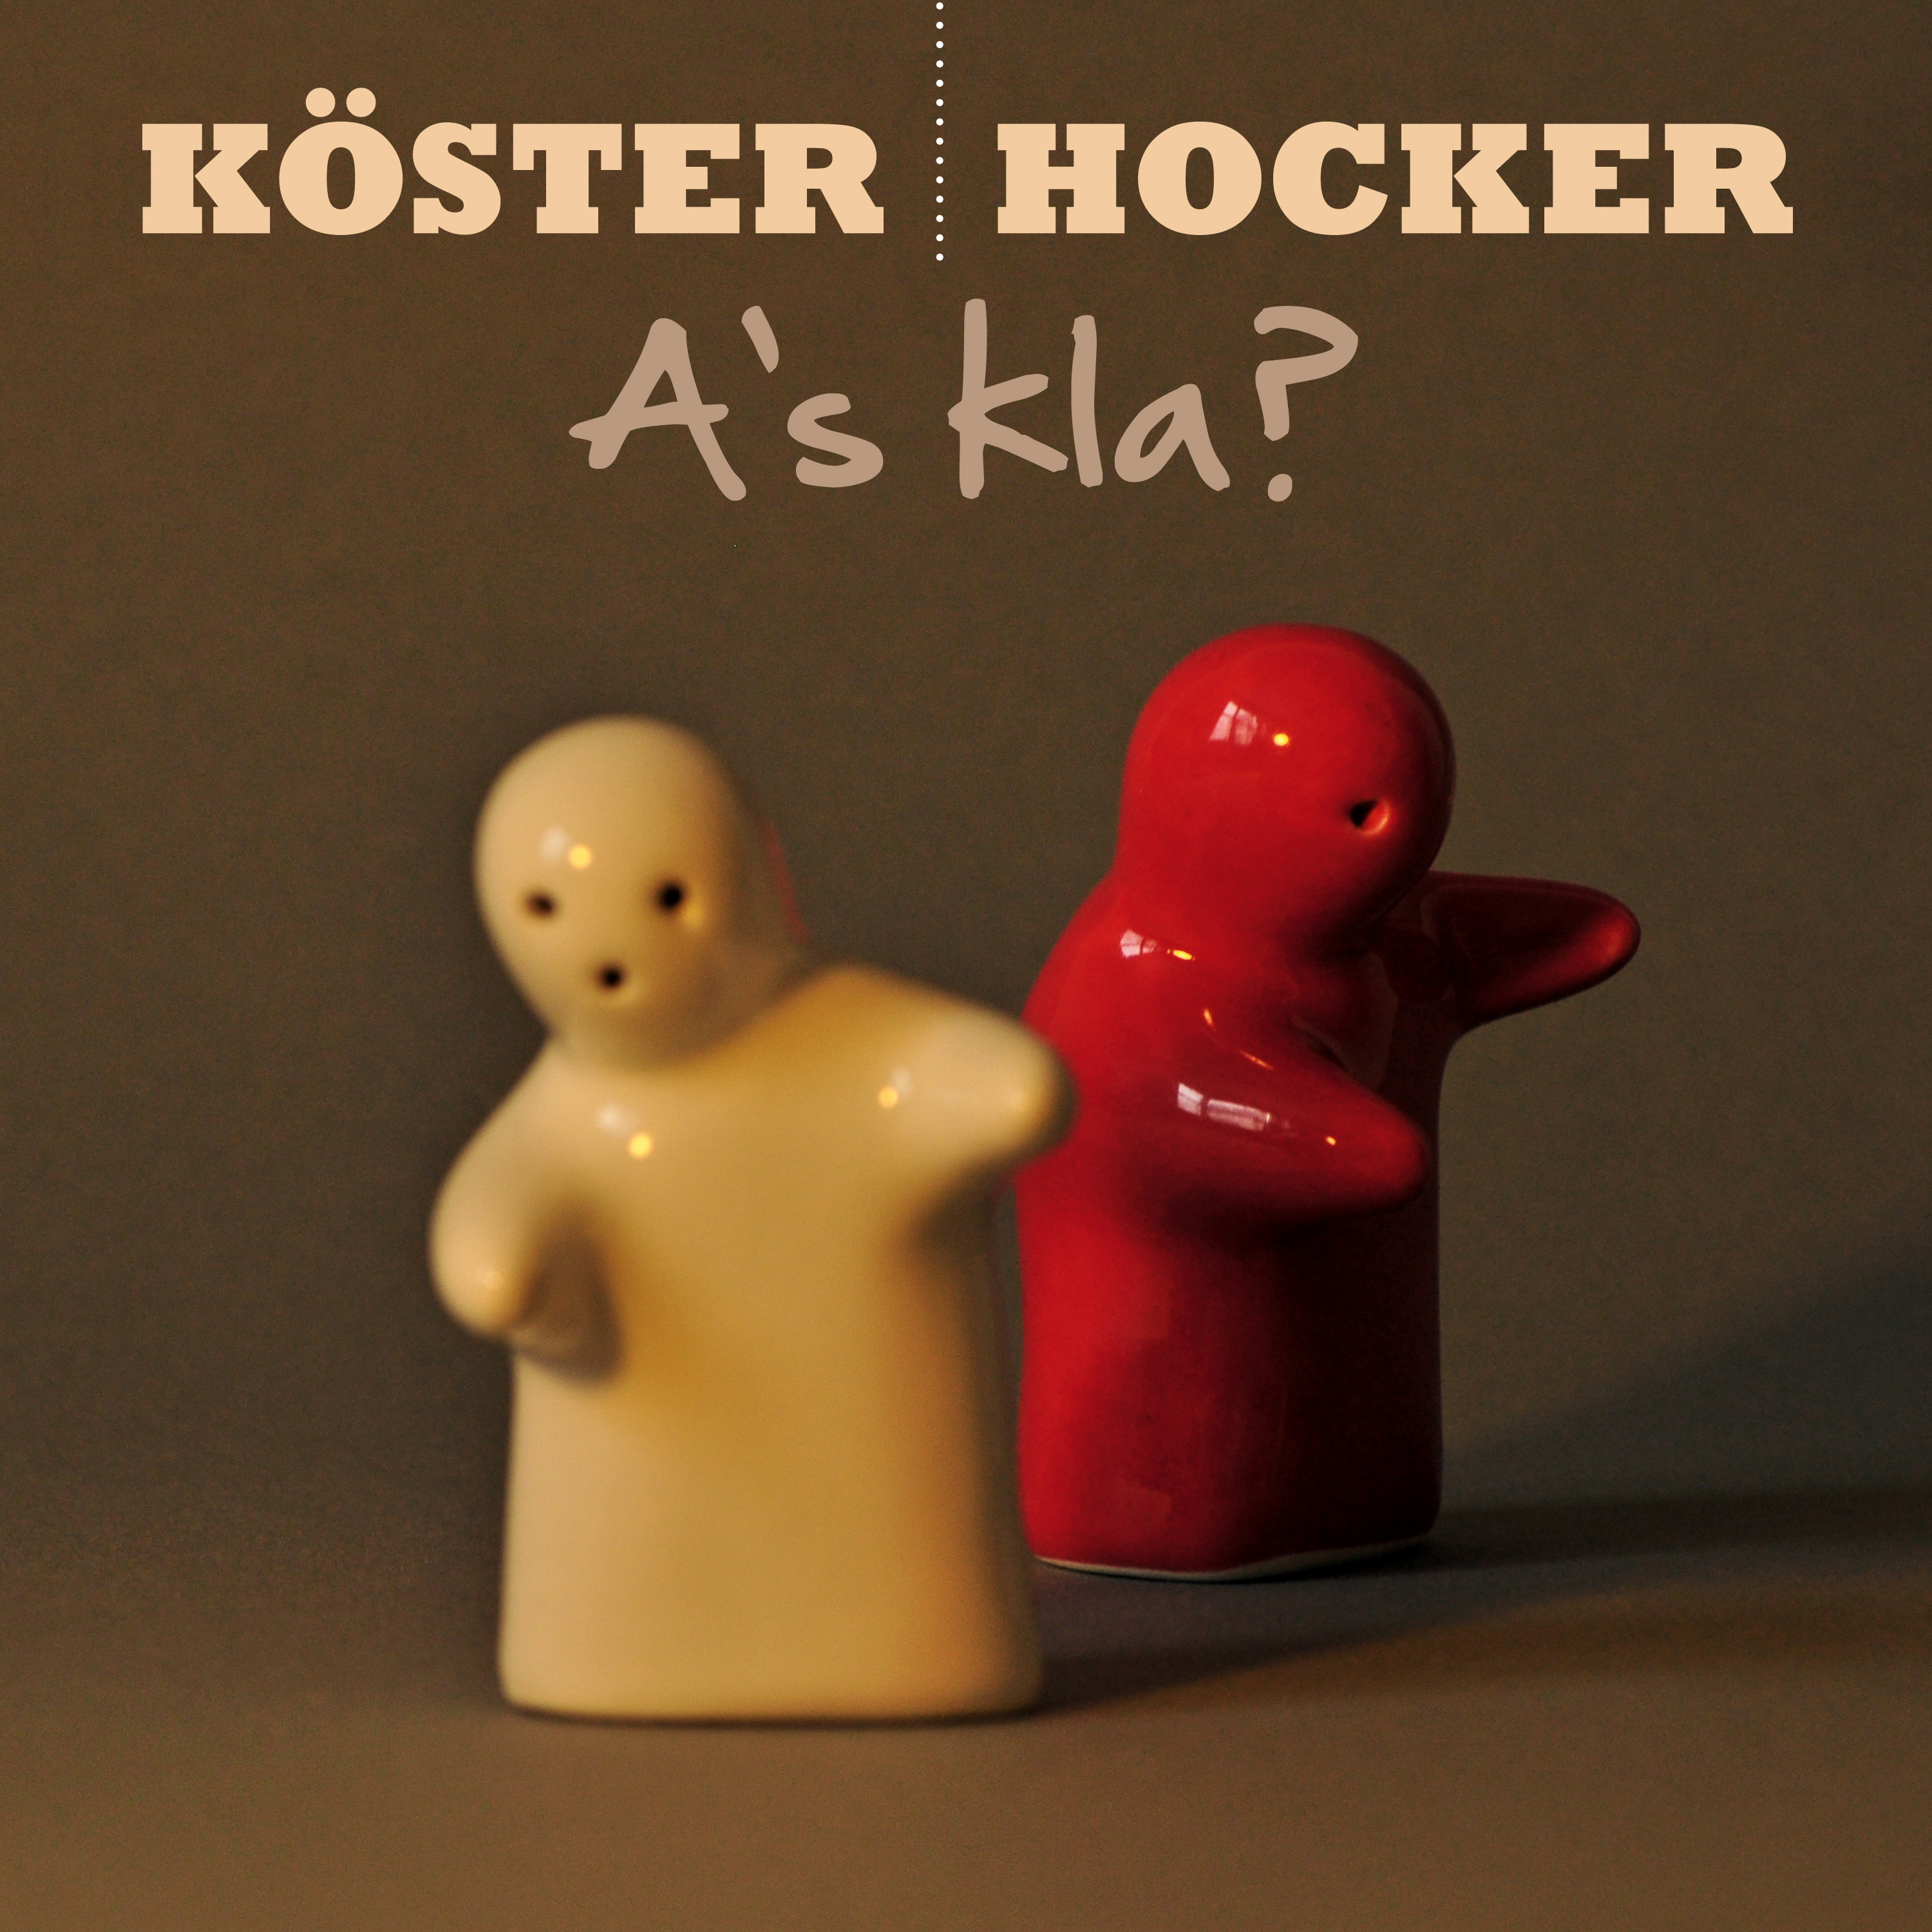 Köster & Hocker - A's Kla?